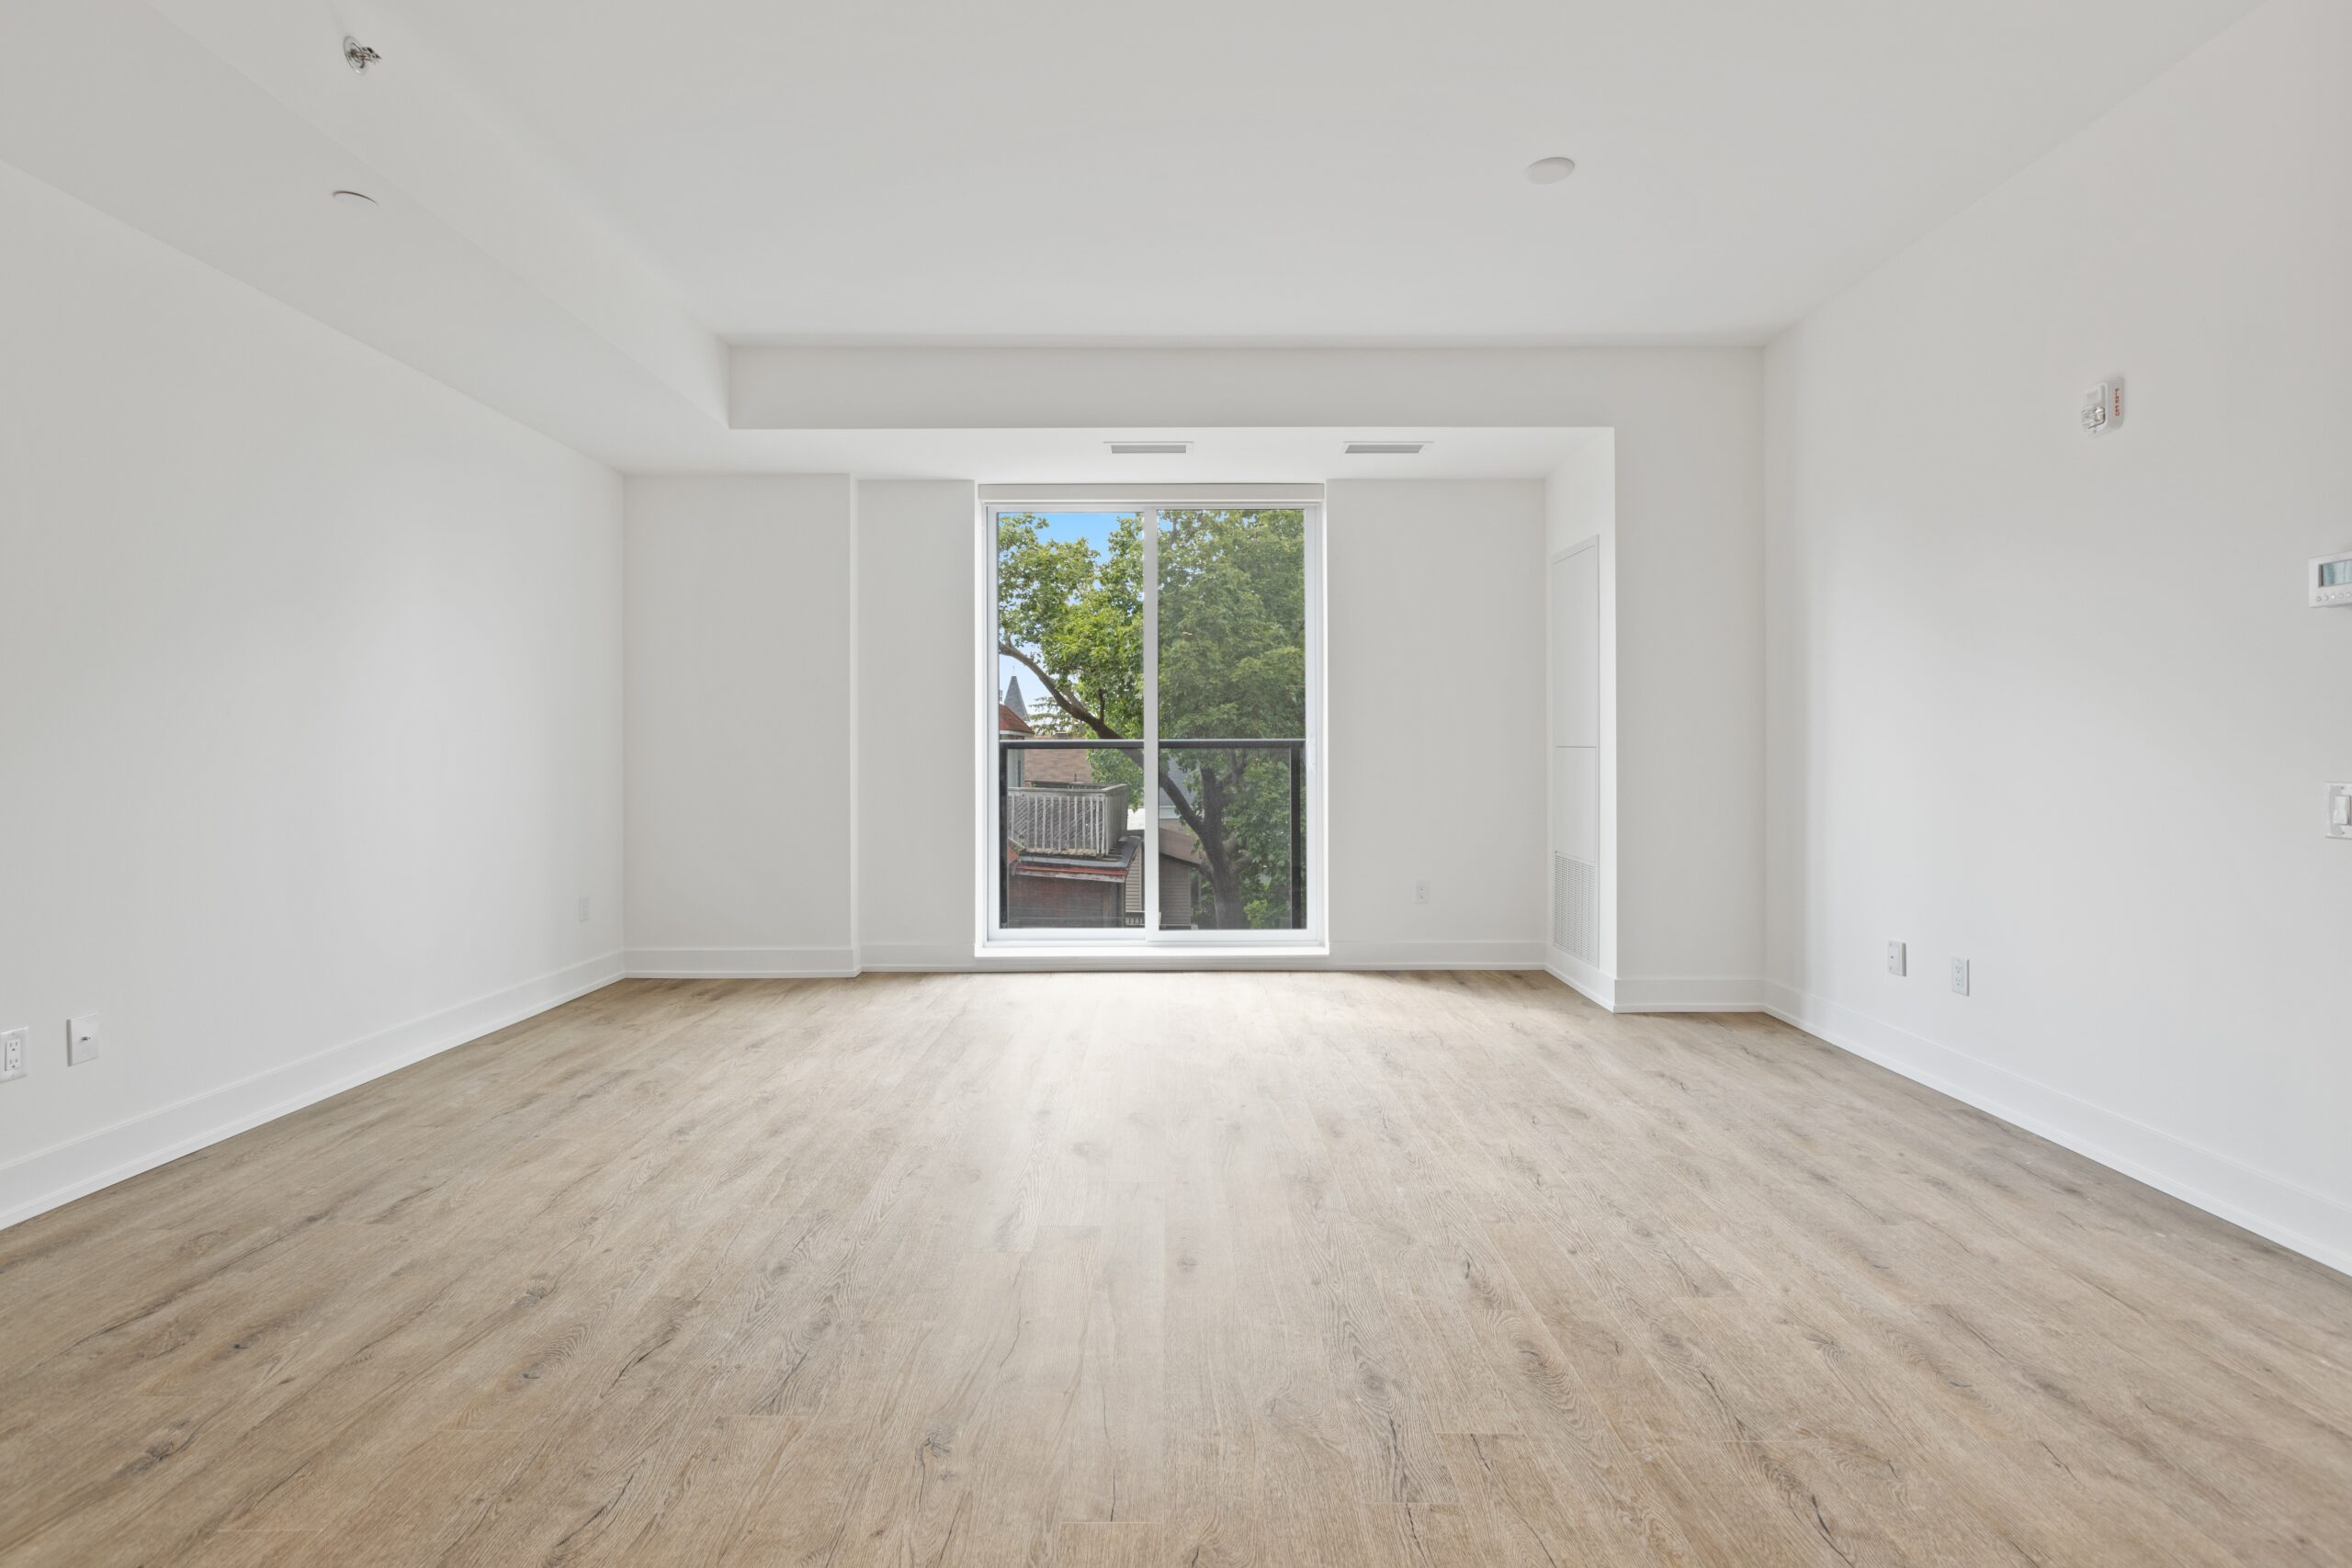 Logement neuf, mur blanc et parquet bois clair avec une baie vitrée vue dégagée sur un arbre